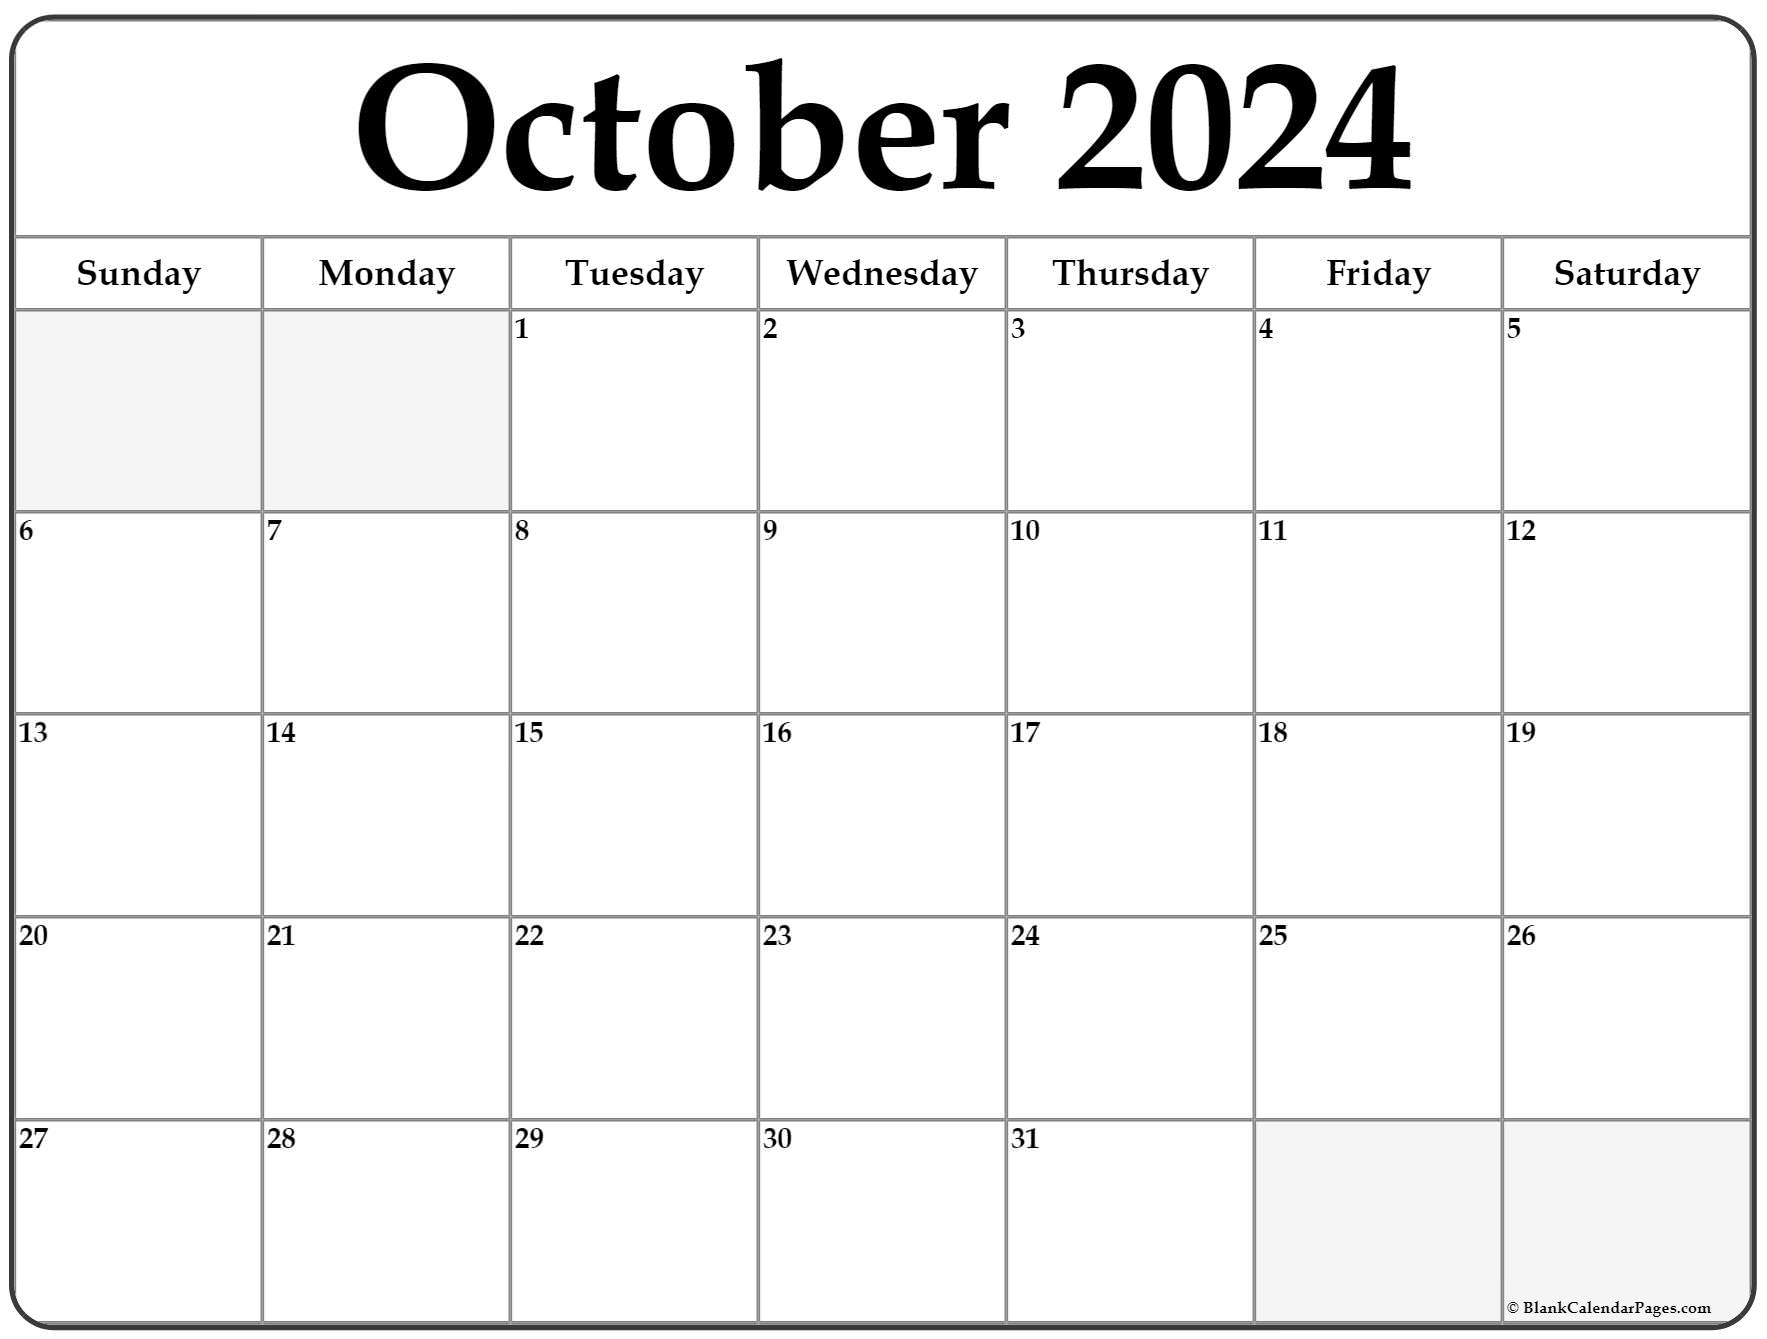 Oct 2022 Calendar Printable October 2022 Calendar | Free Printable Calendar Templates